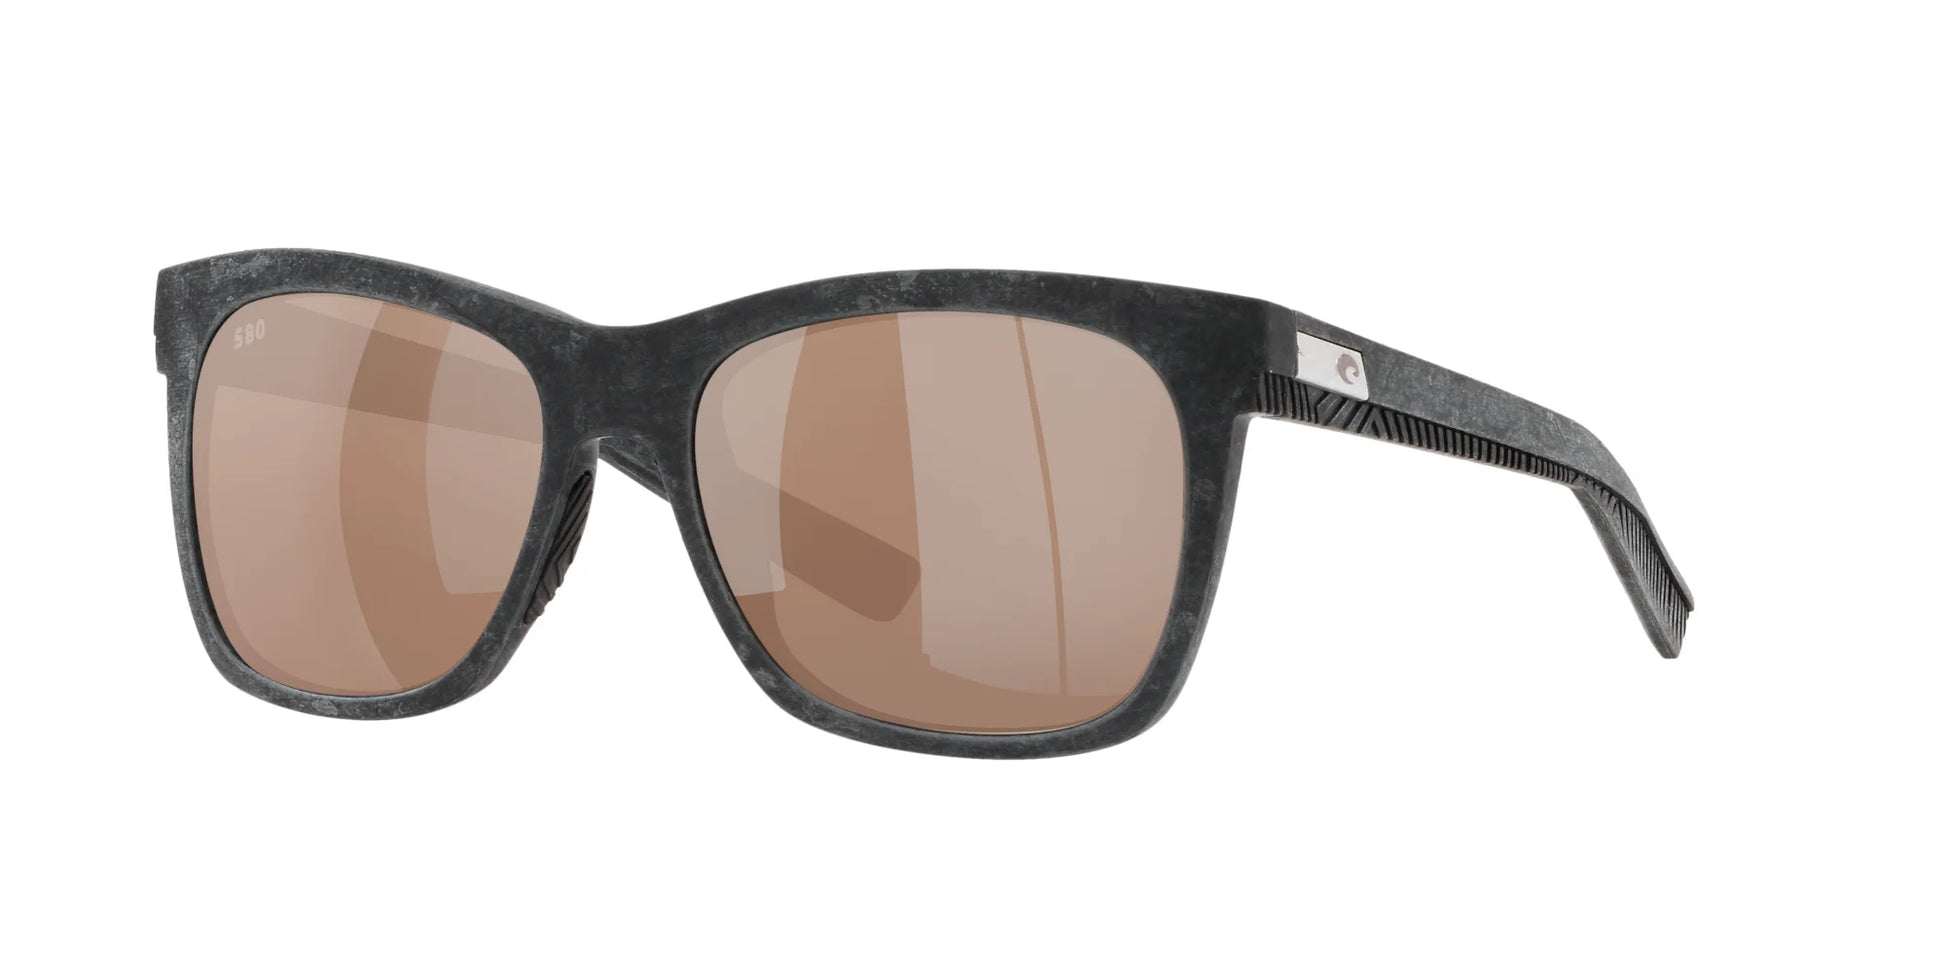 Costa CALDERA 6S9028 Sunglasses Net Gray With Gray Rubber / Copper Silver Mirror